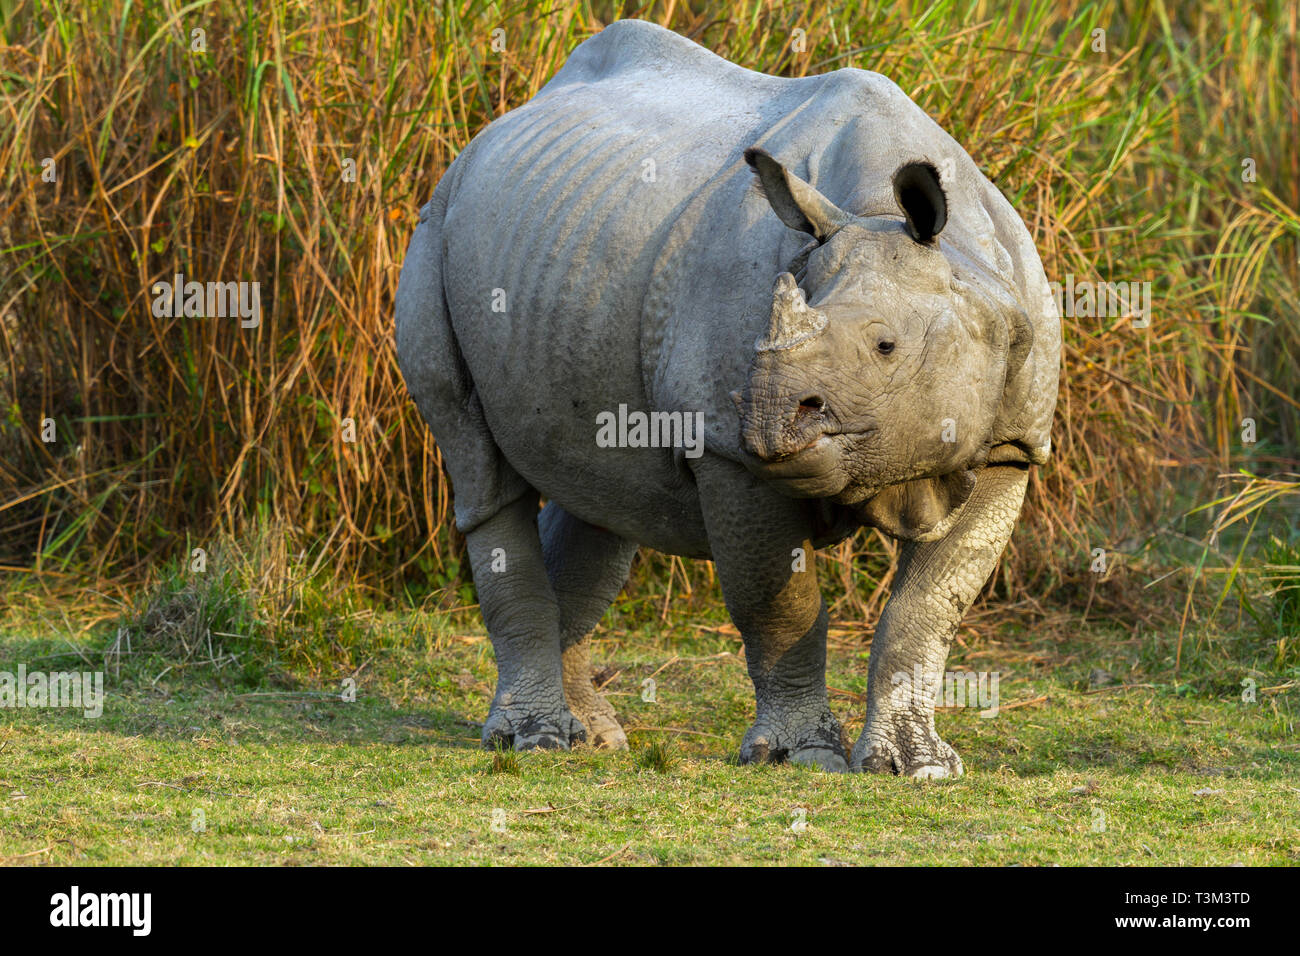 Un rhinocéros indien cornu ou Rhinoceros unicornis dans le parc national de Kaziranga Assam en Inde Banque D'Images